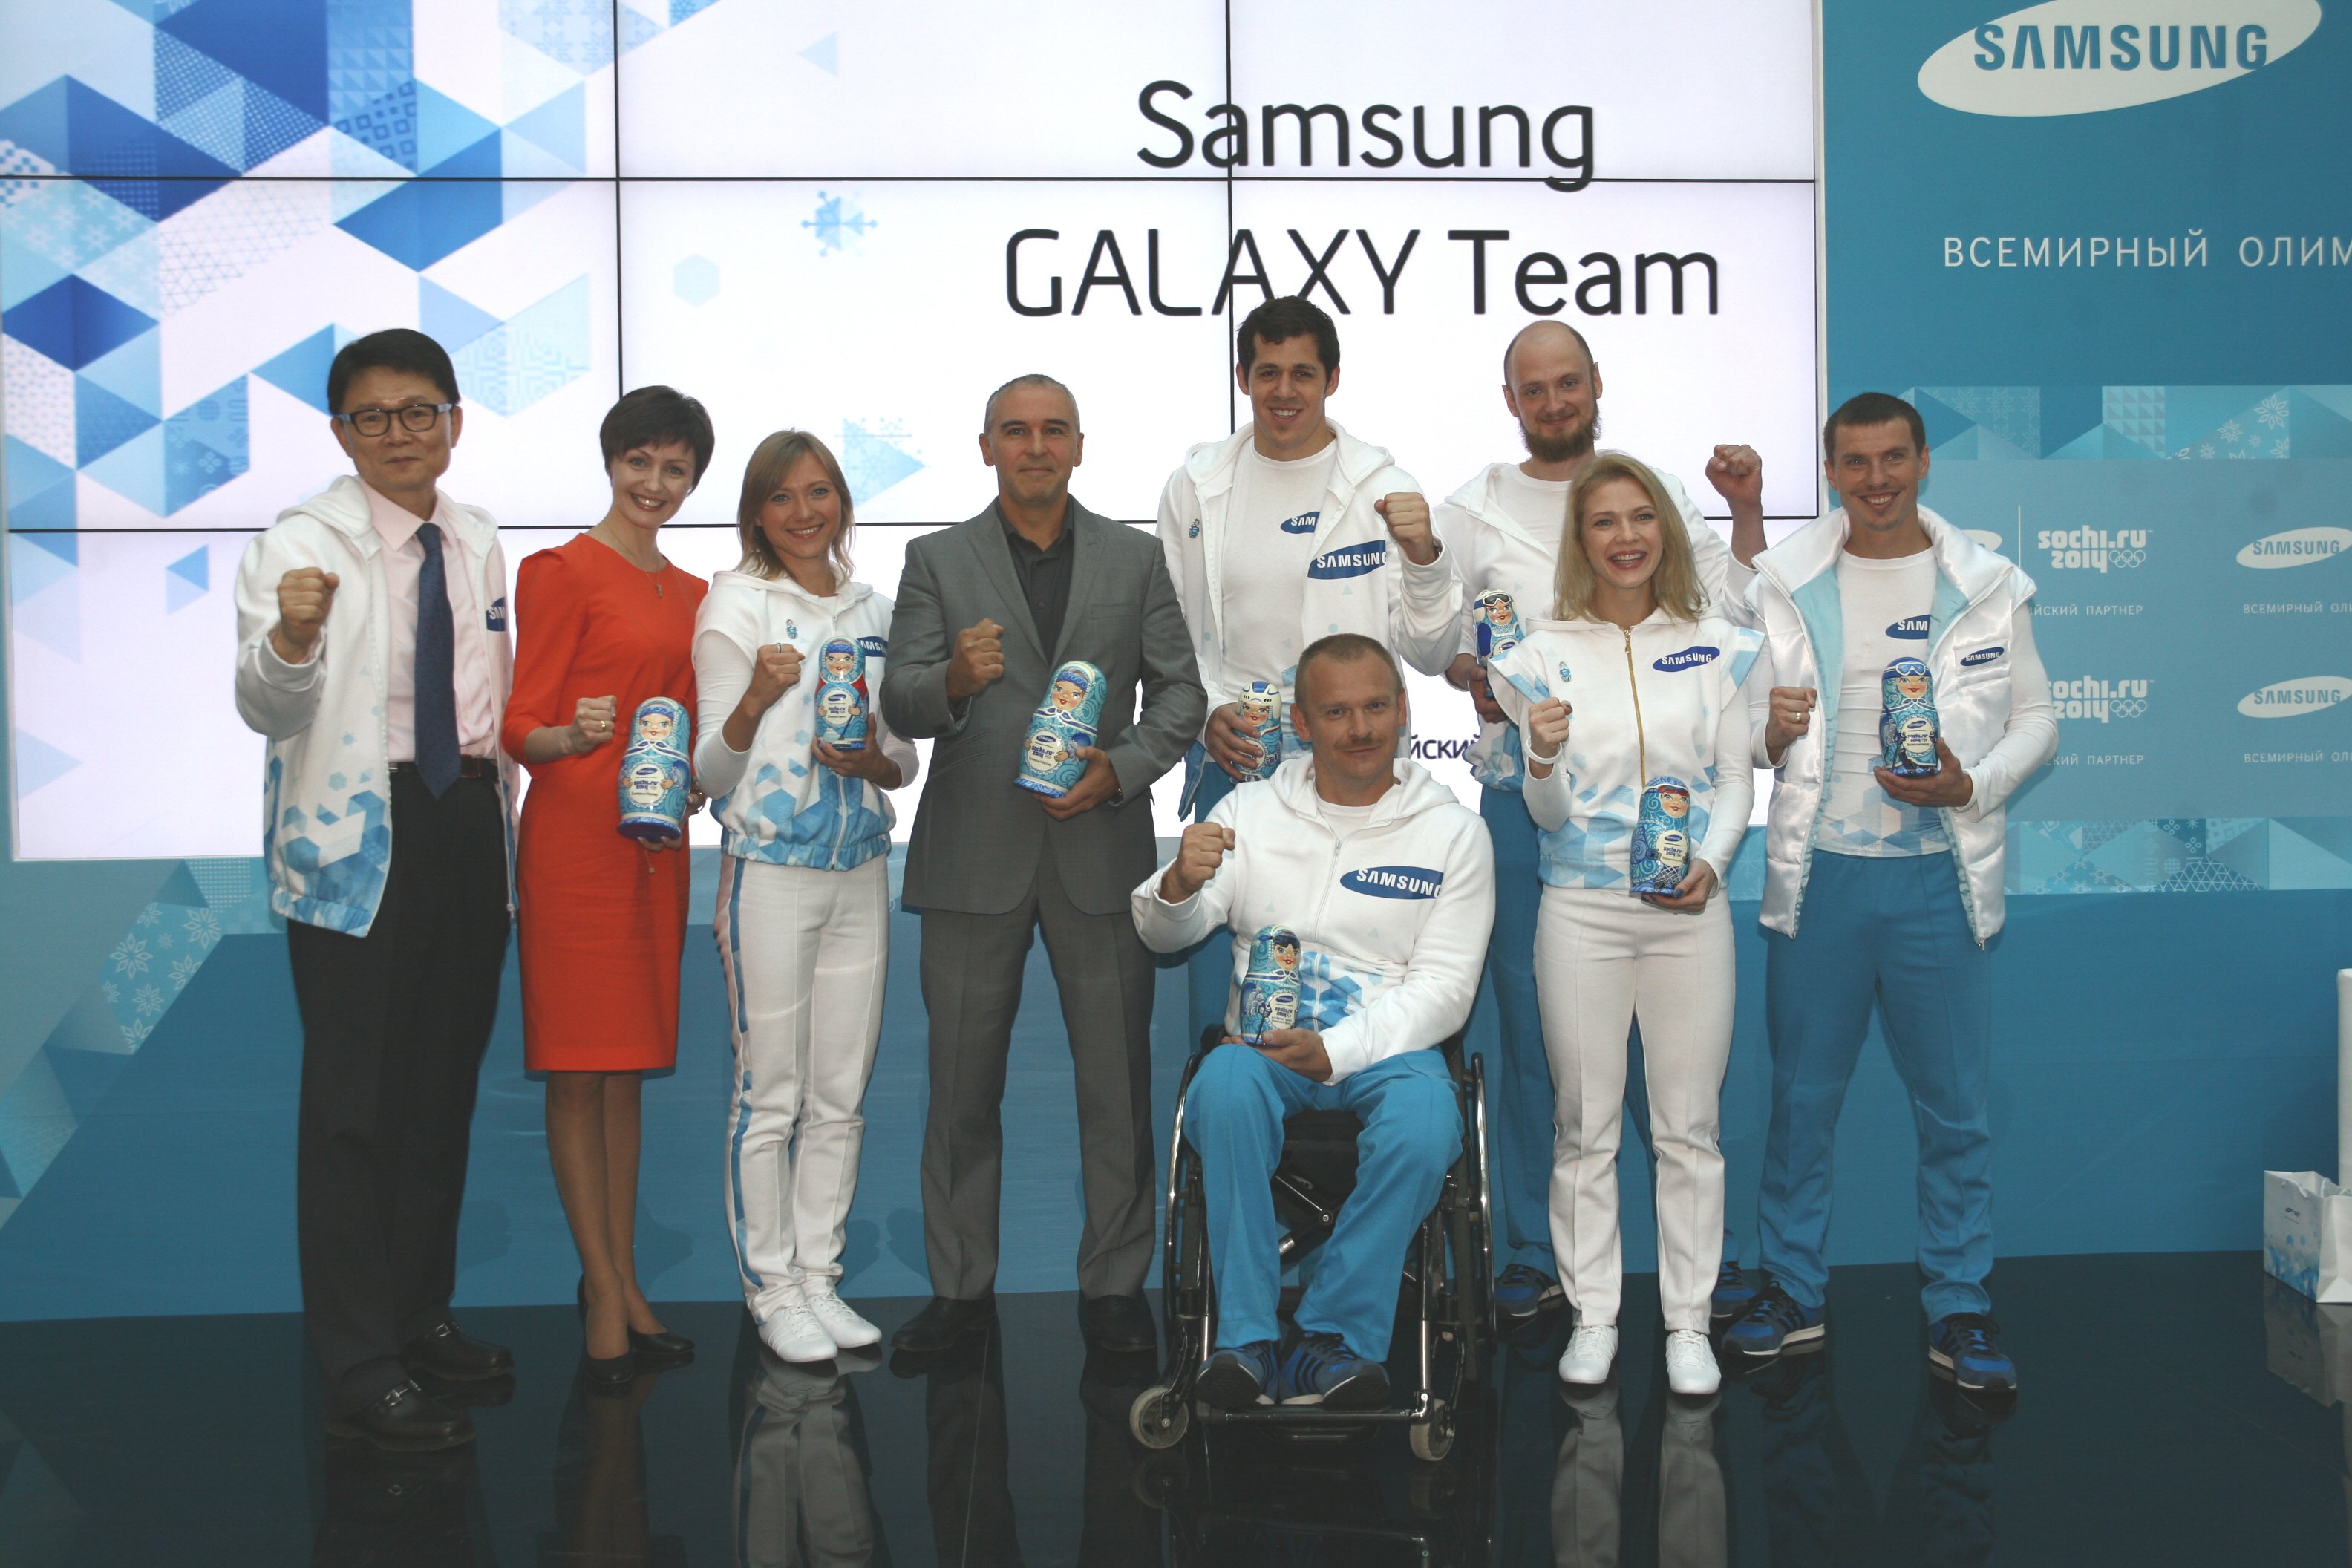 Samsung Presents its First Samsung GALAXY Team for Sochi 2014 Led by Russian Ice Hockey Star Evgeni Malkin